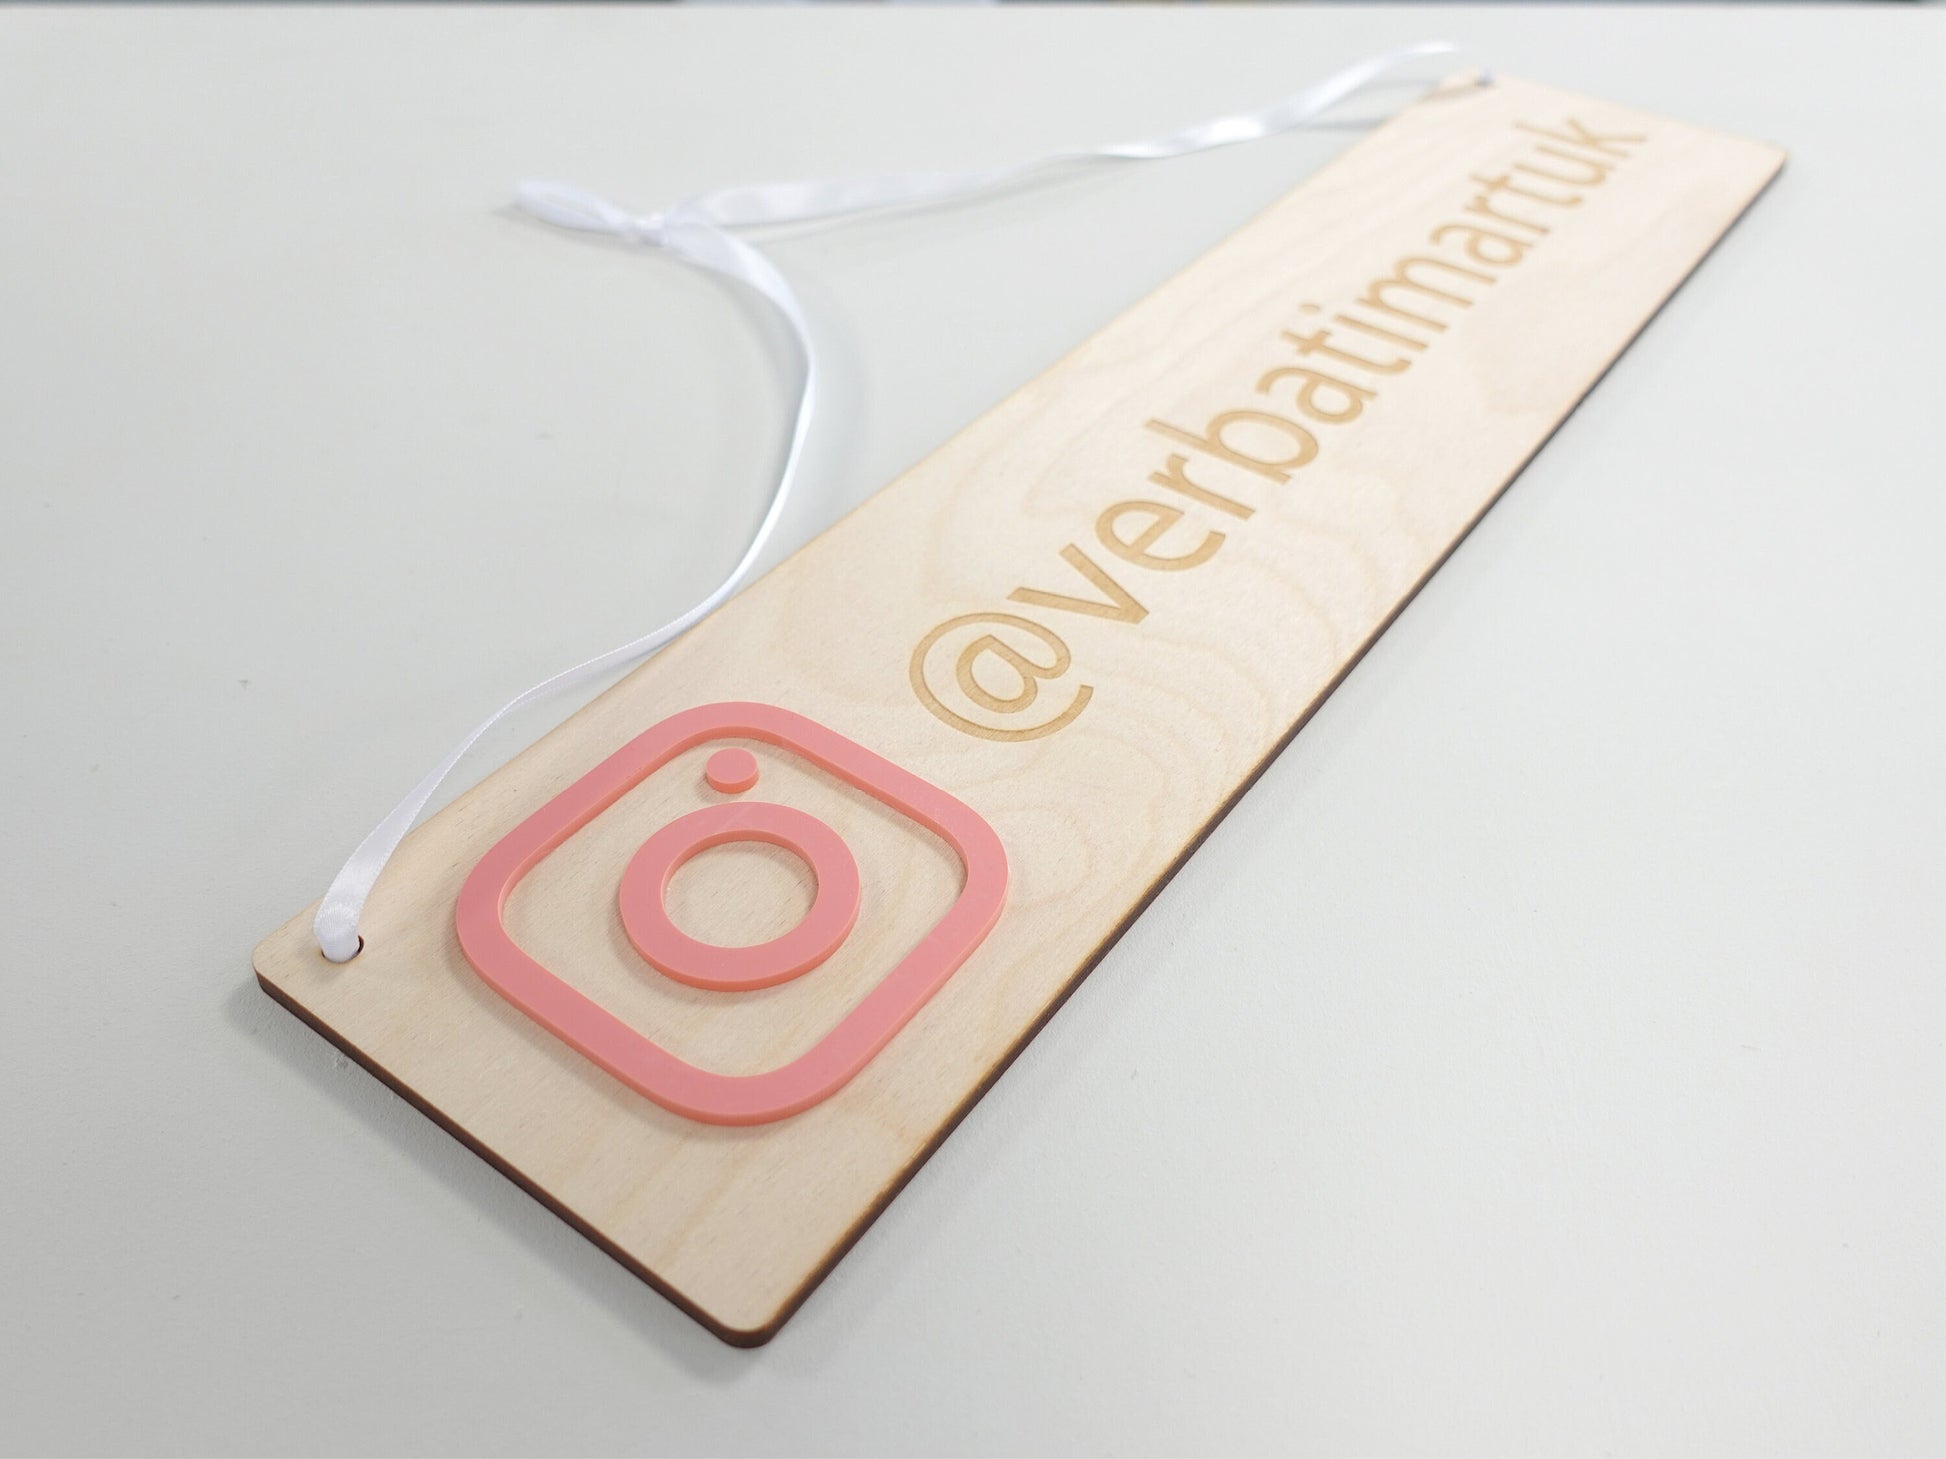 Social media sign | Wooden Instagram sign | Twitter Facebook | Coffee shop social media sign | Wood craft fair sign | Wall sign VA026